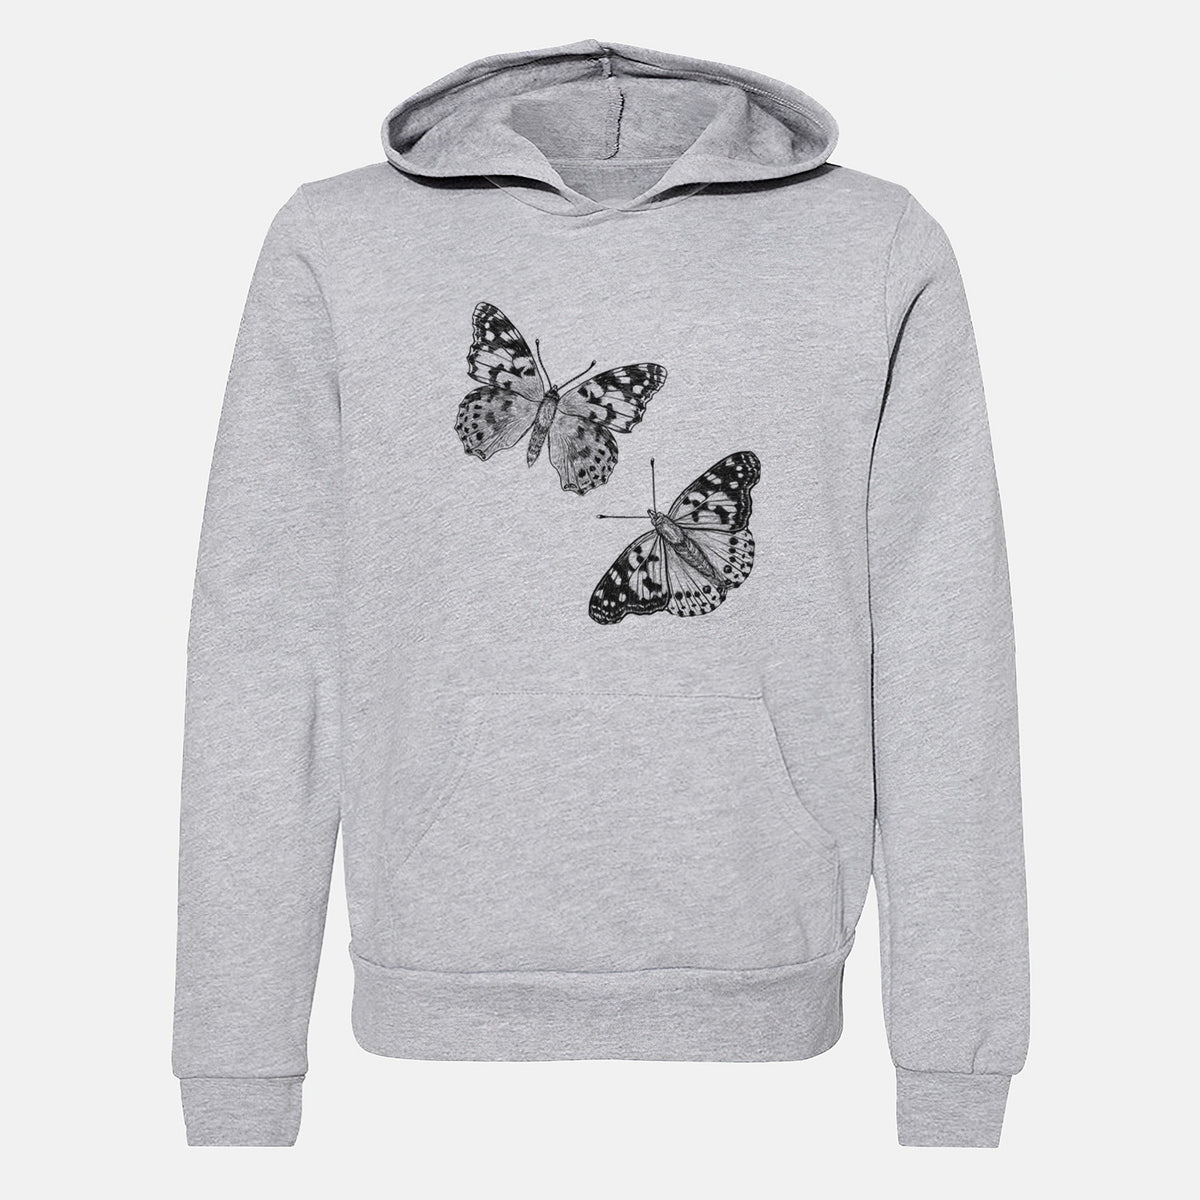 Painted Lady Butterflies - Youth Hoodie Sweatshirt